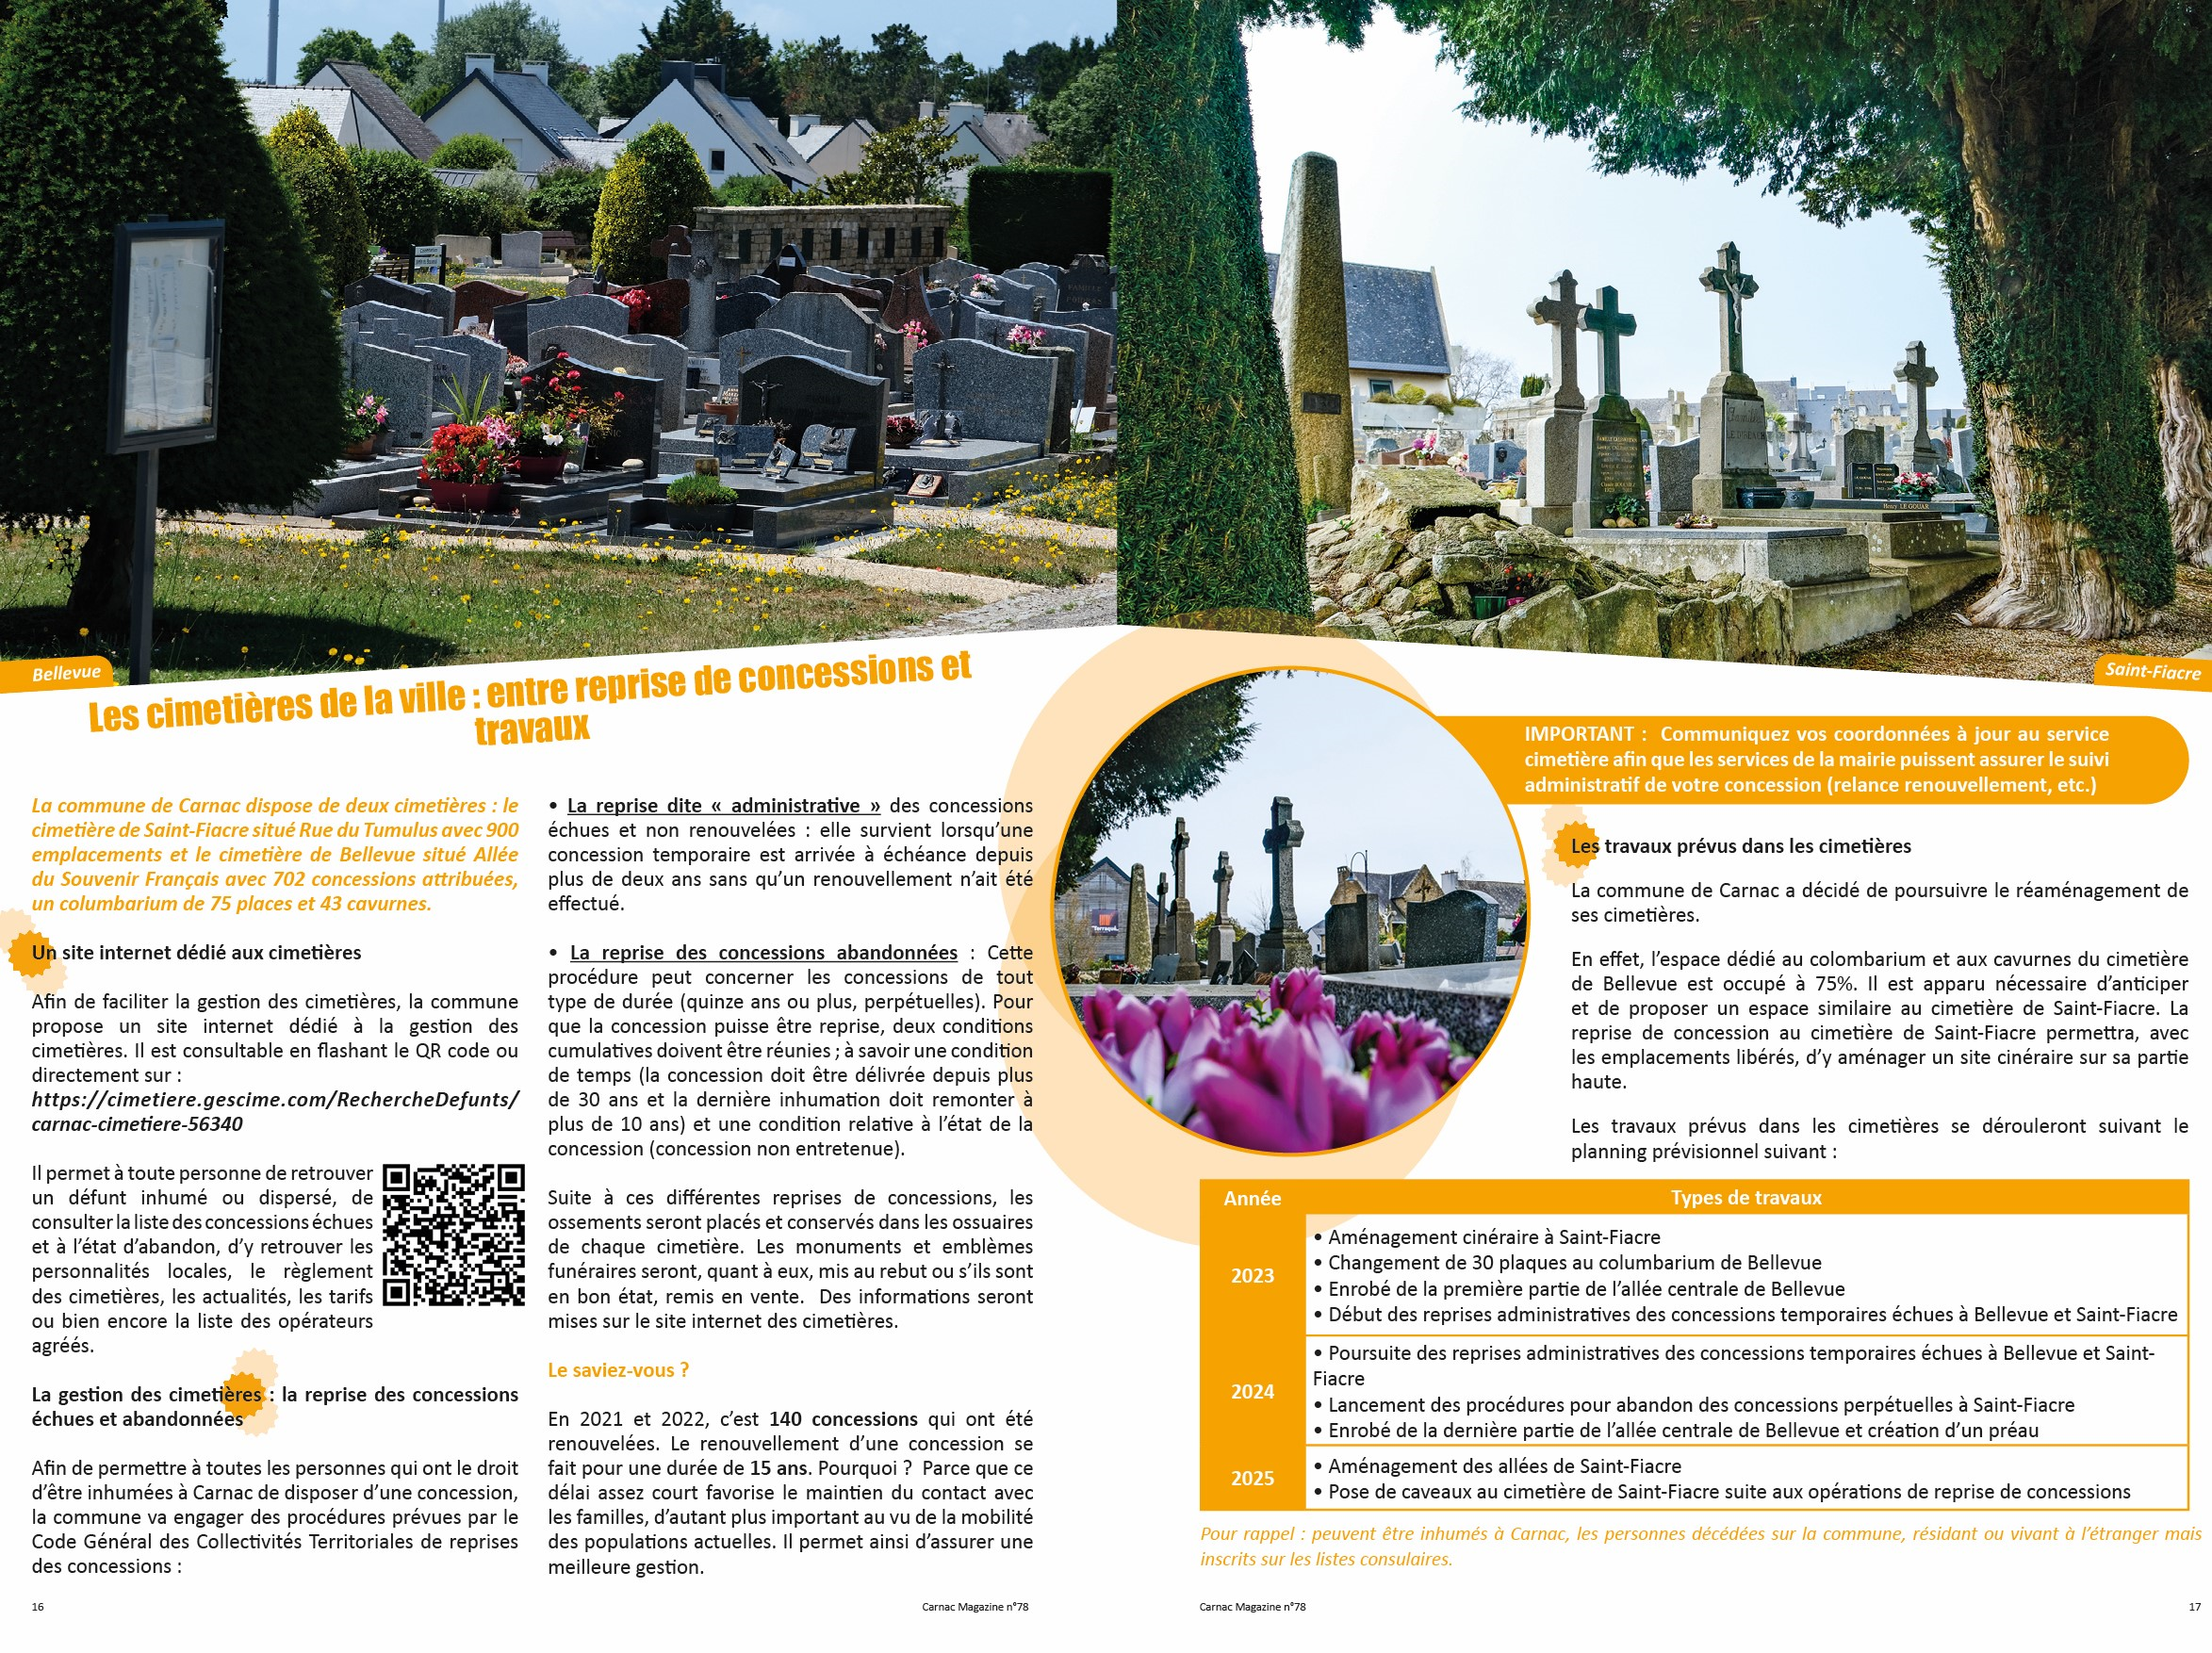 Les cimetières de la ville : entre reprise de concessions et travaux